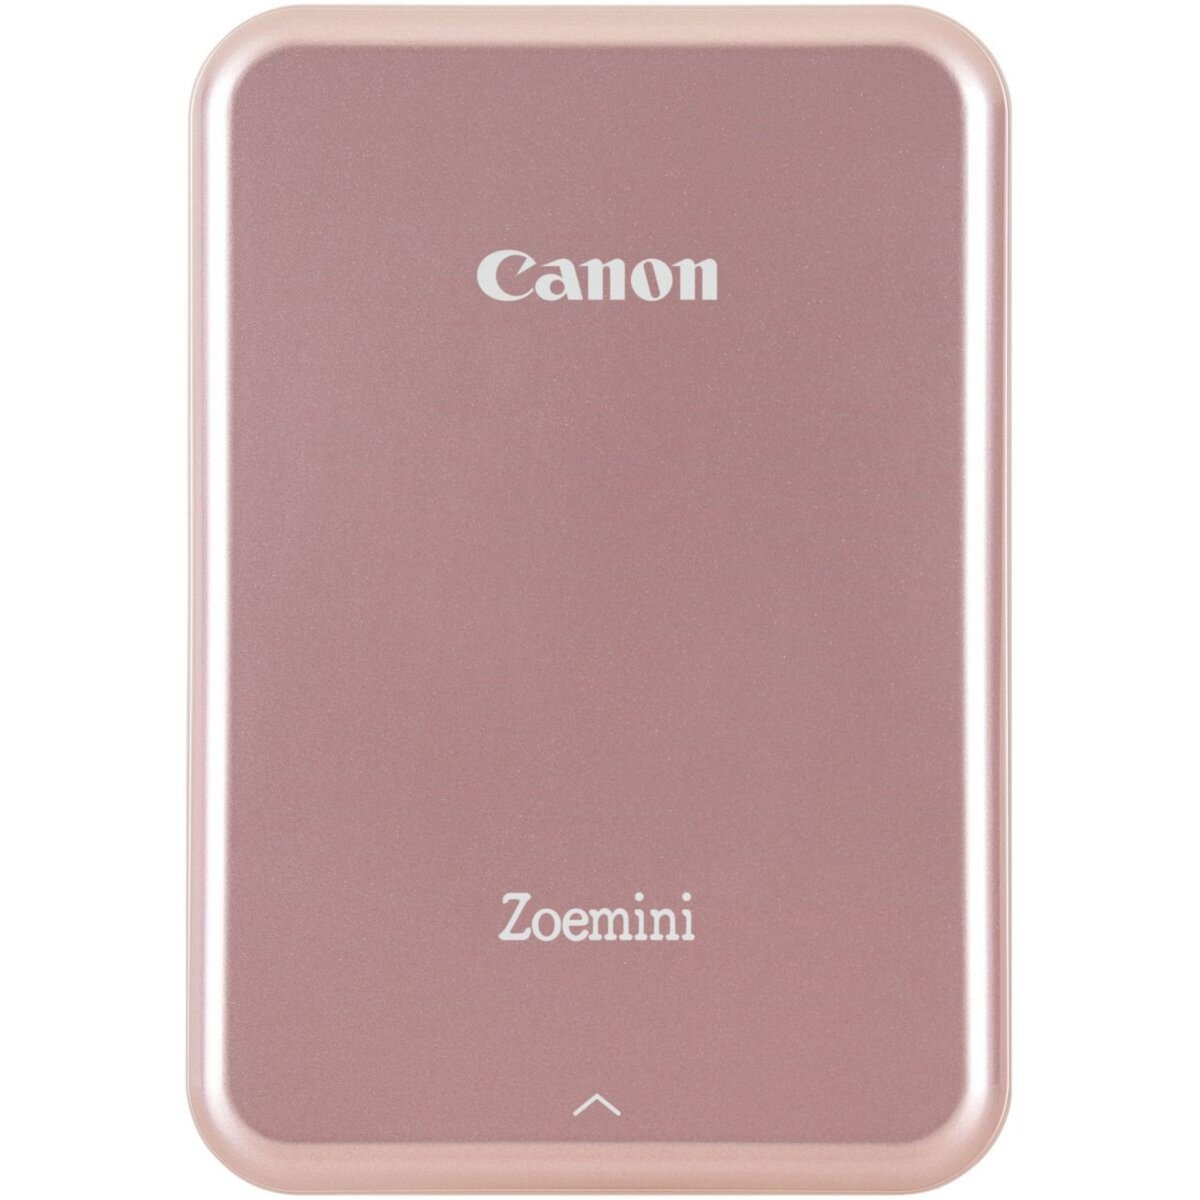 Canon Imprimante photo portable Zoemini Rose